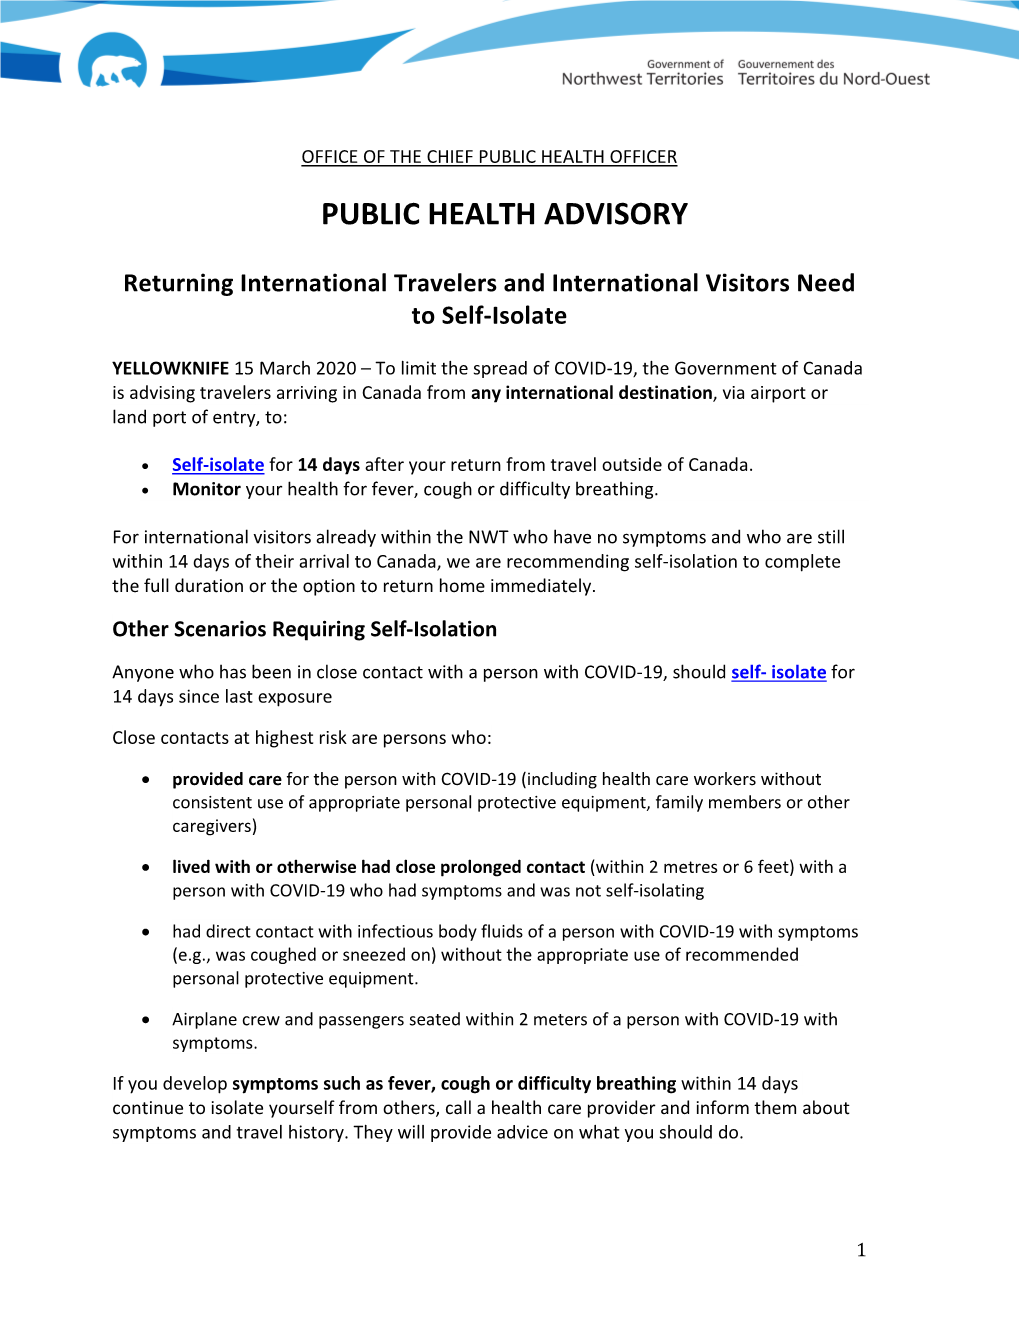 Public Health Advisory